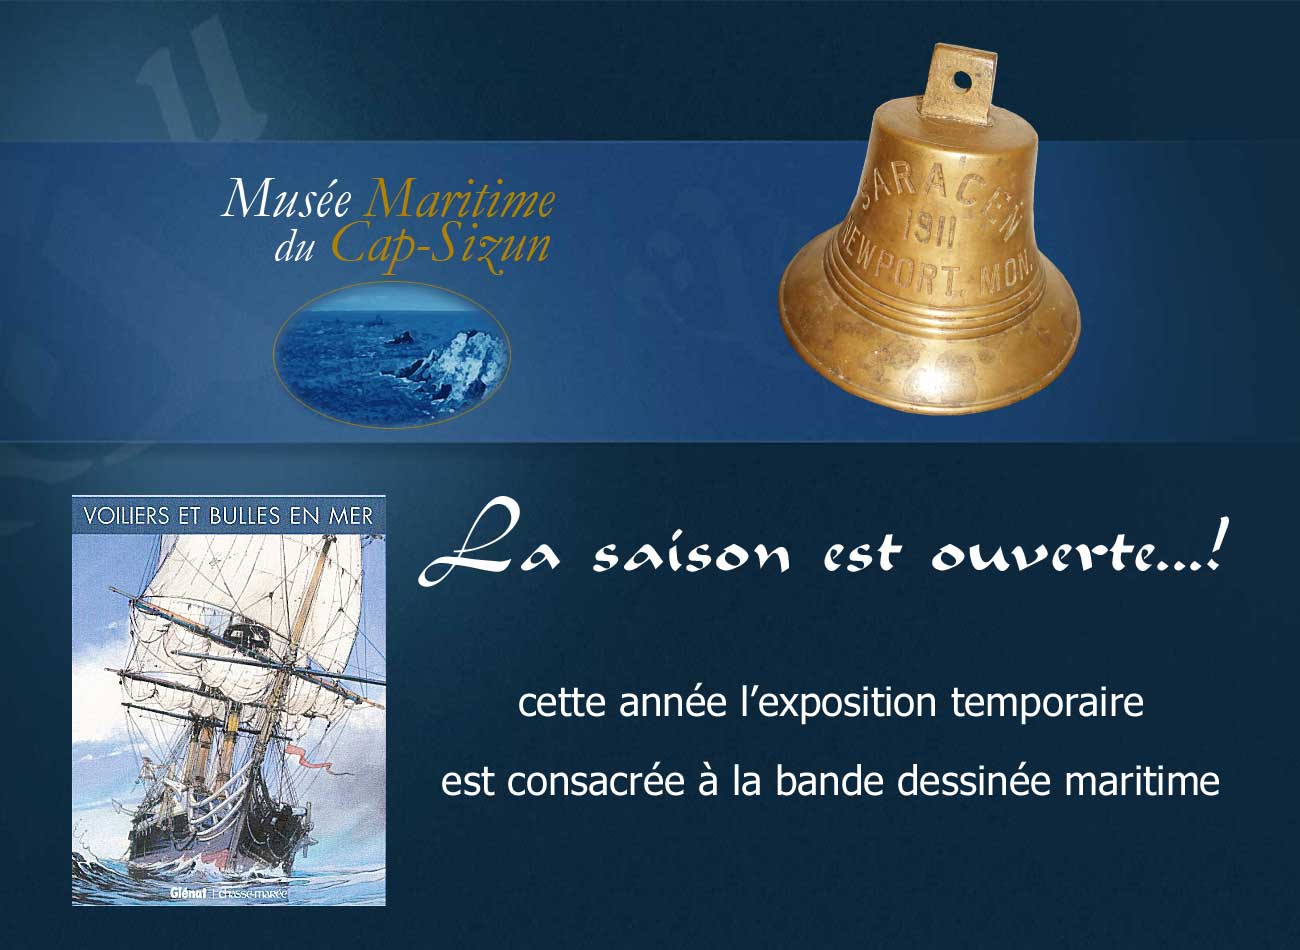 Lire la suite à propos de l’article Musée Maritime: la saison est ouverte